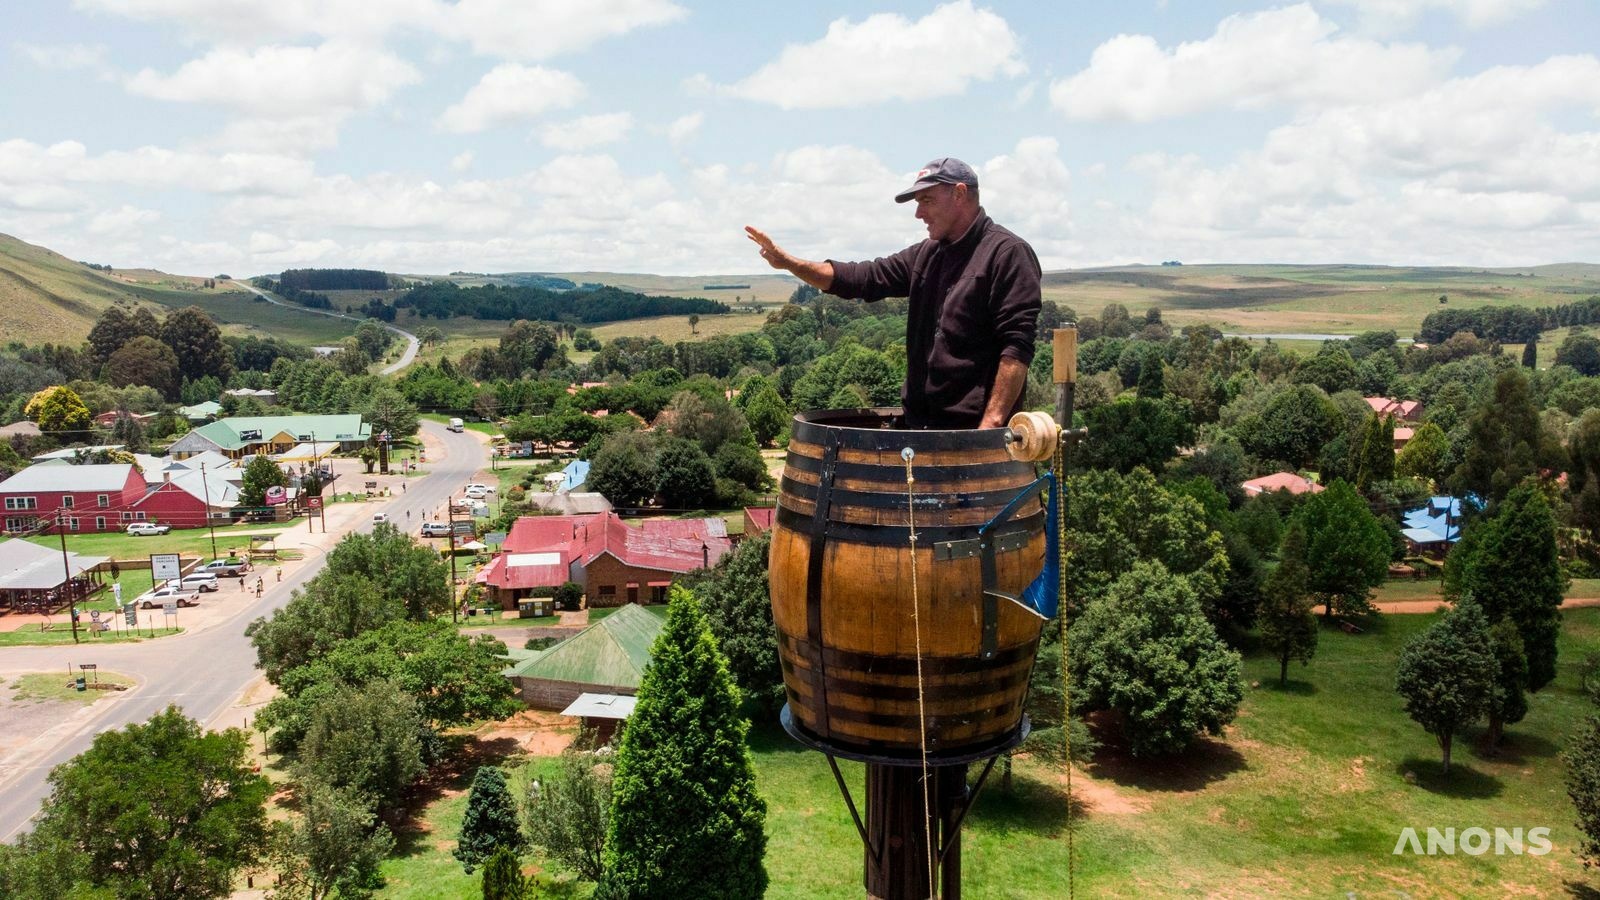 Житель ЮАР больше двух месяцев сидит в винной бочке на высоком столбе